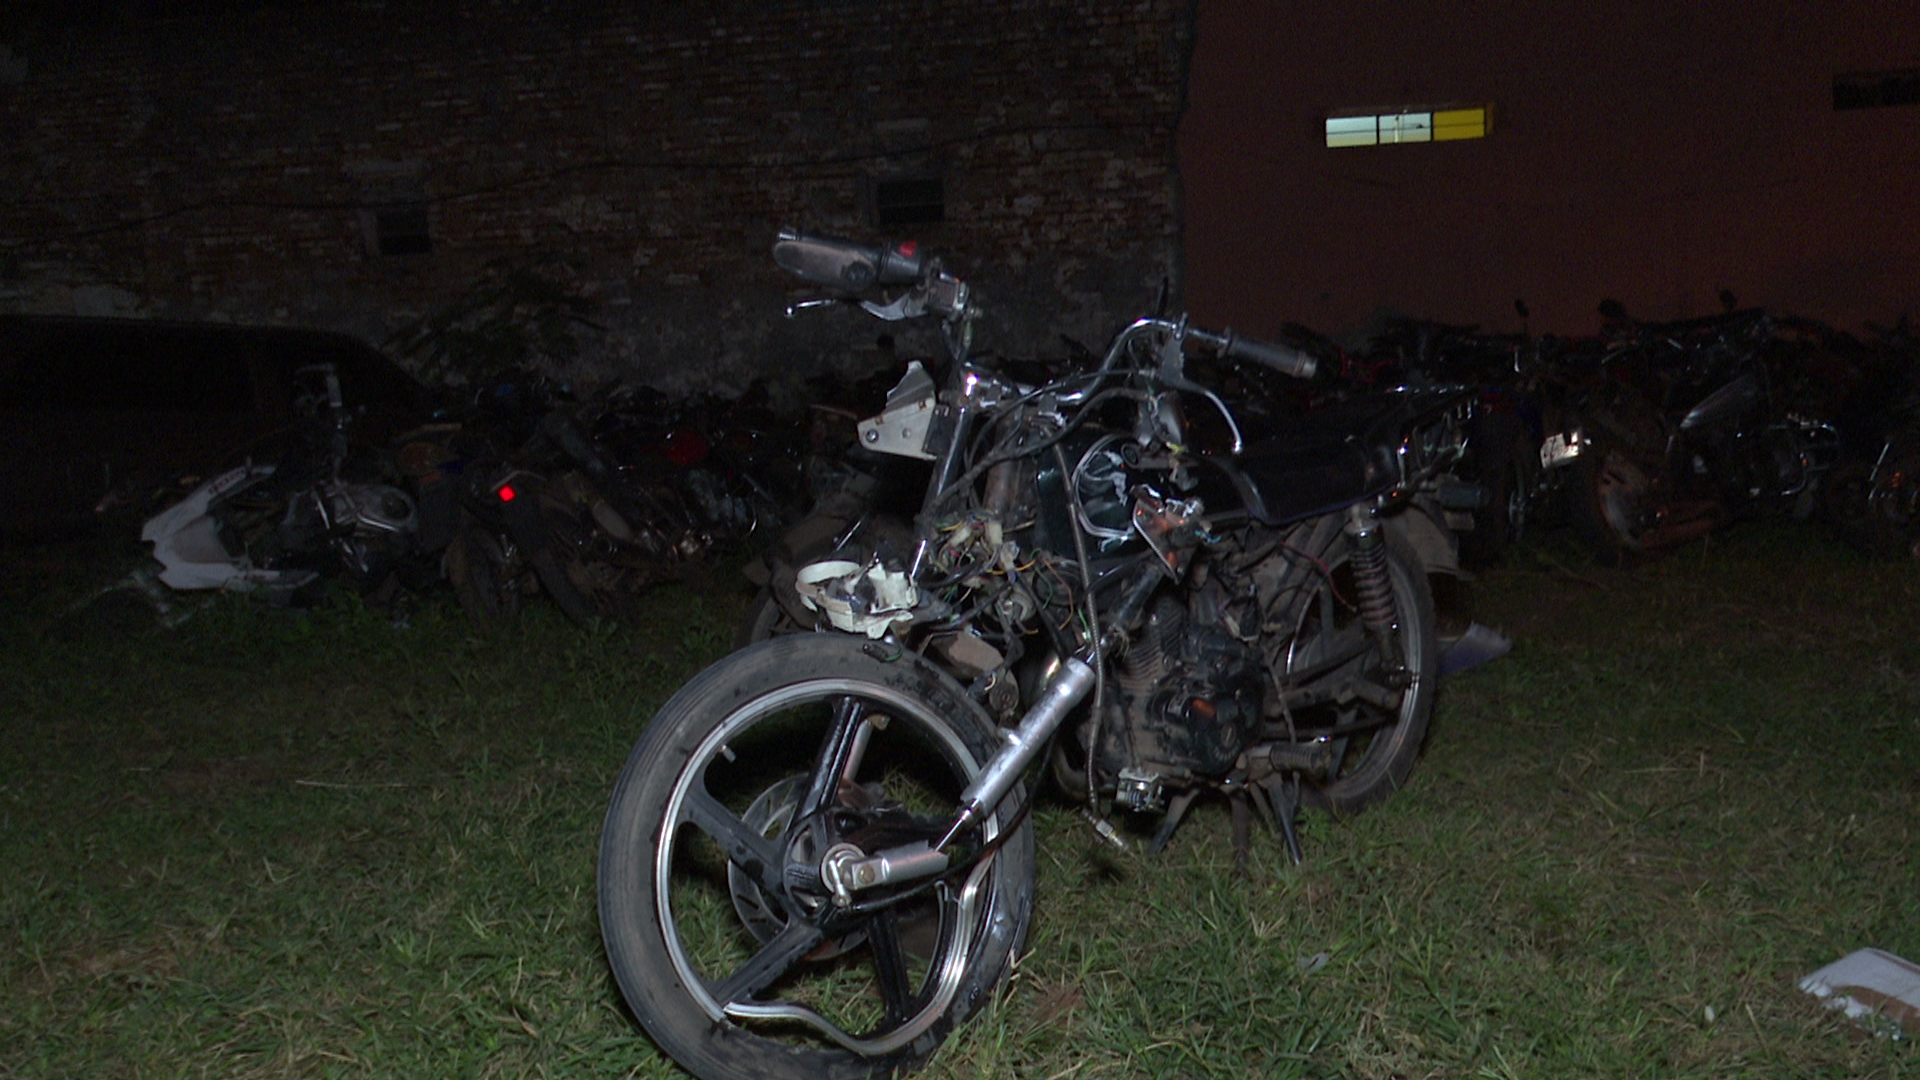 El conductor de la motocicleta perdió la vida, en tanto que su acompañante está gravemente herida.